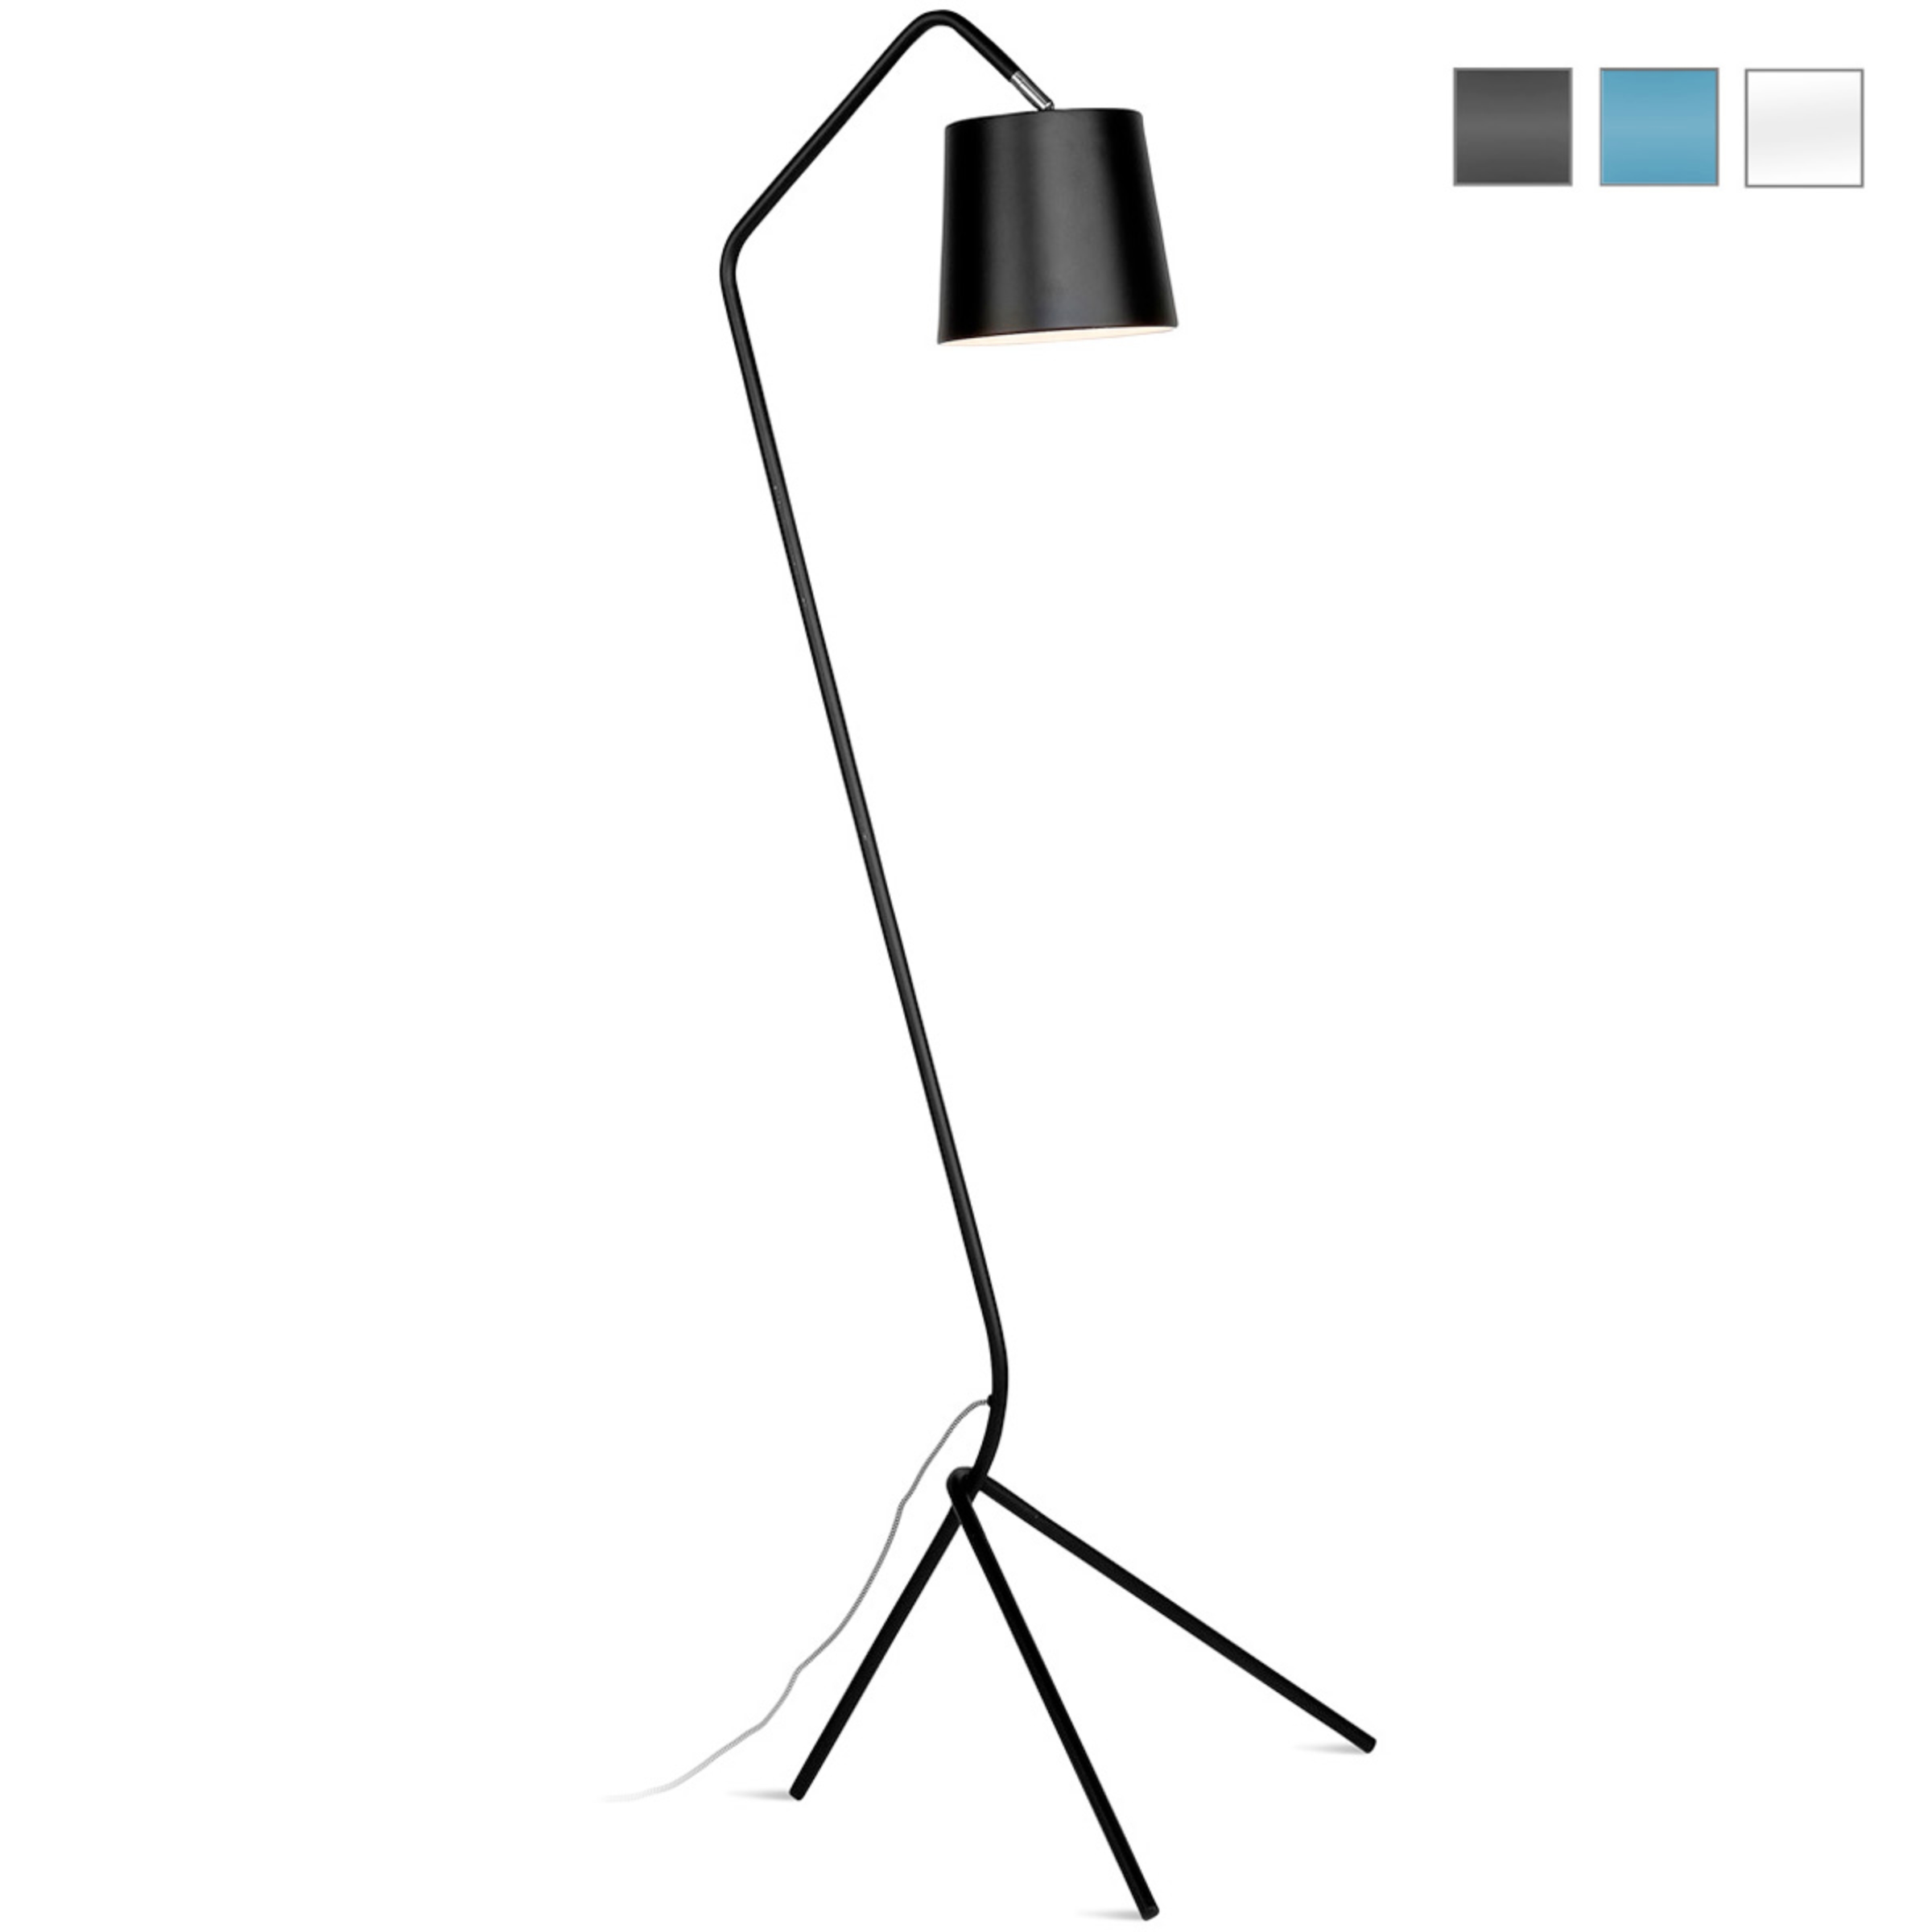 Moderne Design-Stehlampe mit Dreibein-Gestell: Graziles Design: Stehlampe mit Dreibein-Gestell in schwarz